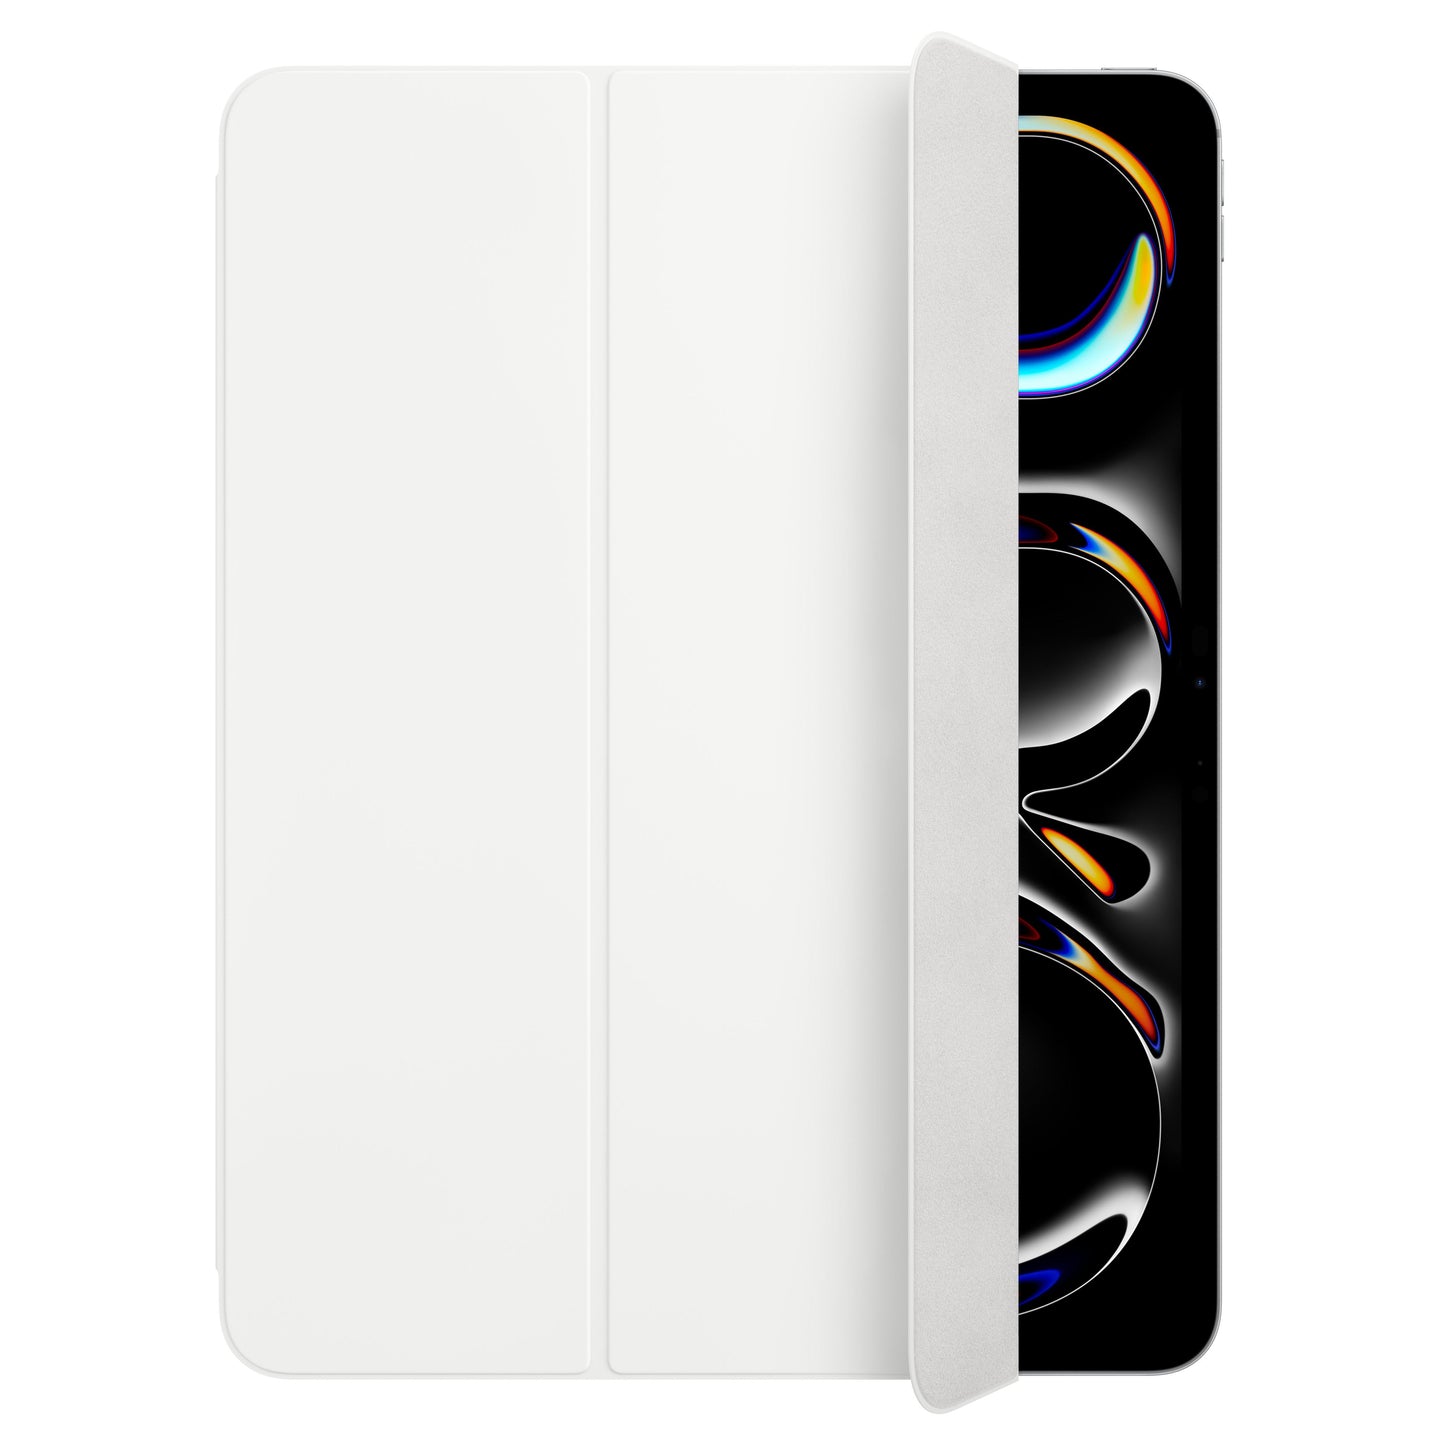 Smart Folio สำหรับ iPad Pro รุ่น 13 นิ้ว (ชิป M4) - สีขาว